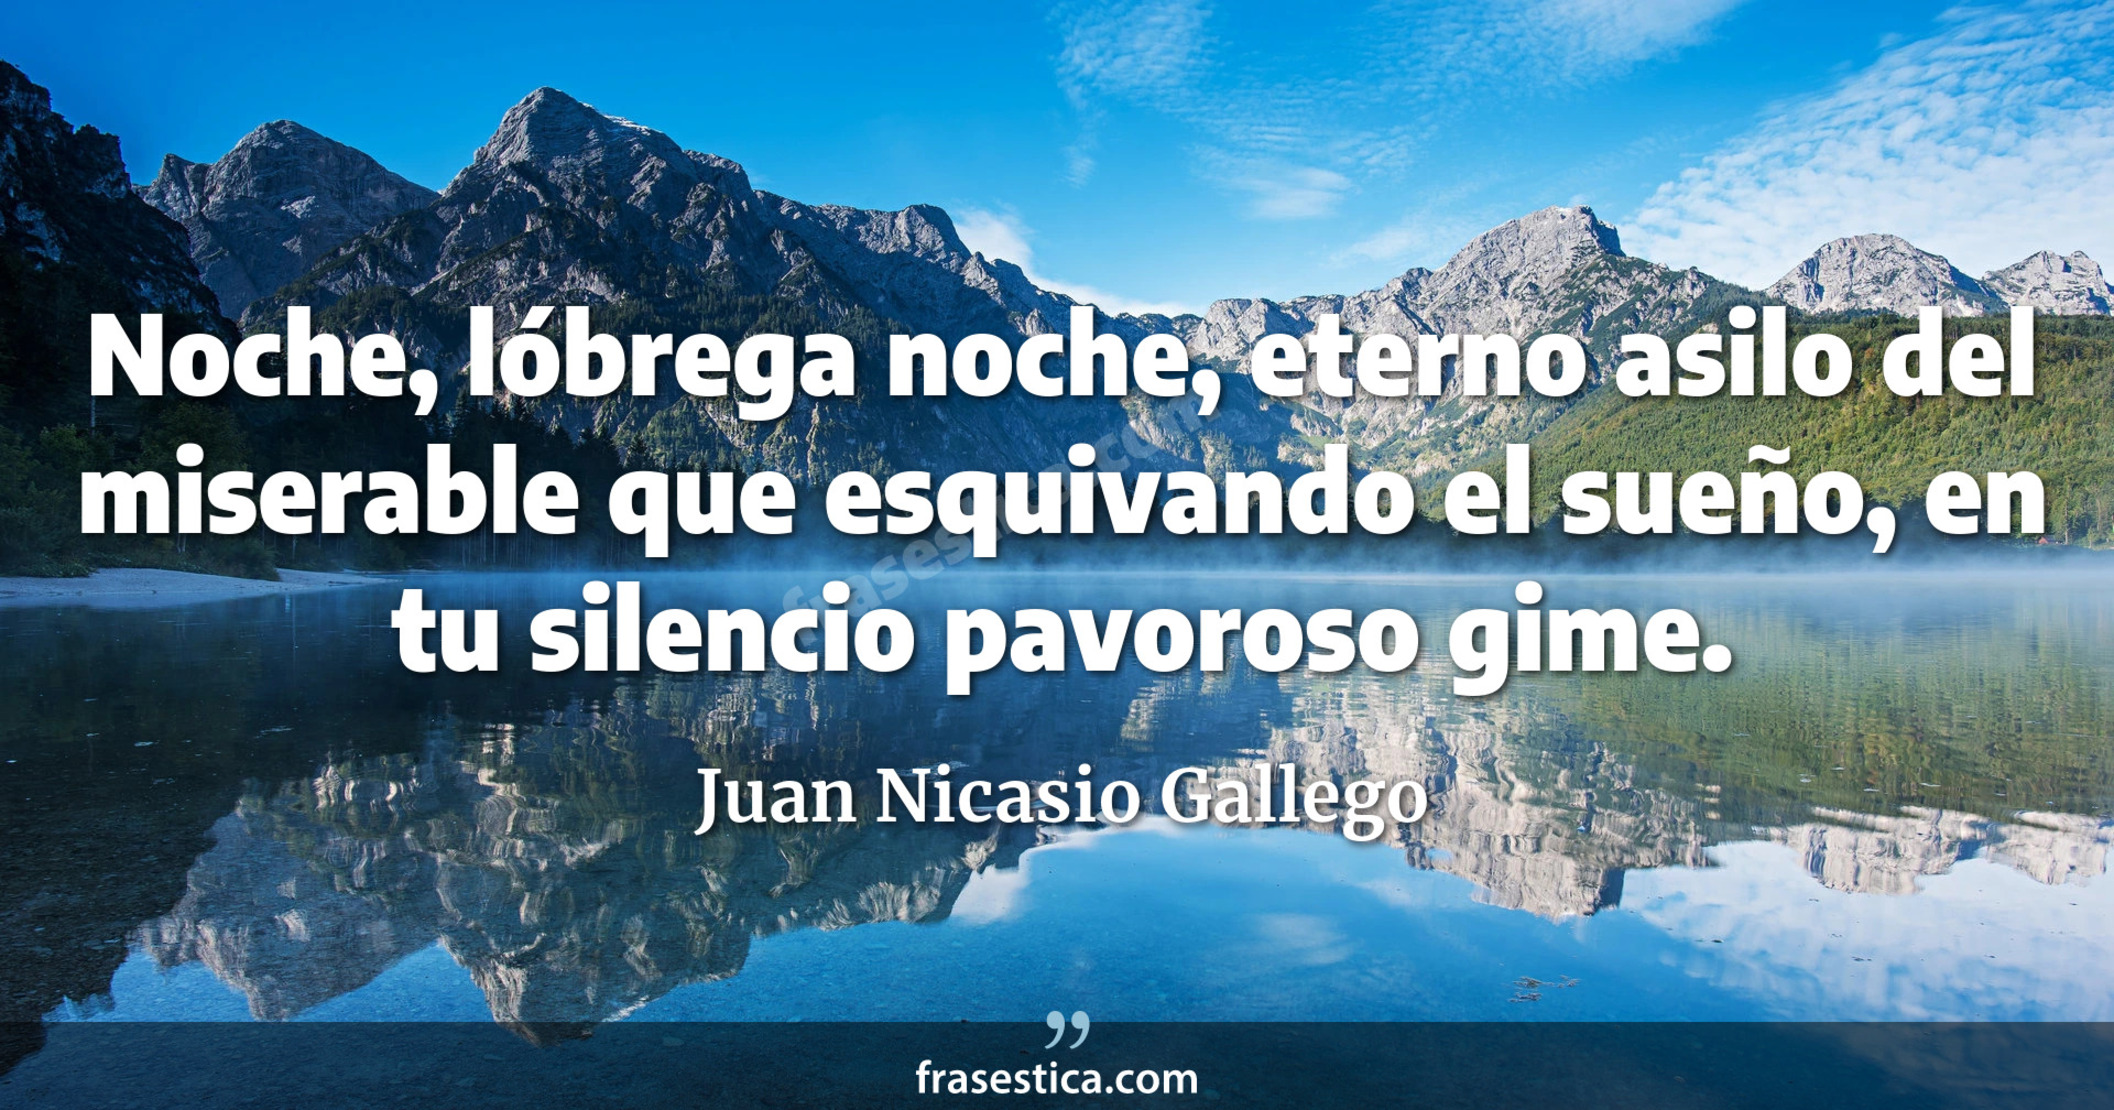 Noche, lóbrega noche, eterno asilo del miserable que esquivando el sueño, en tu silencio pavoroso gime. - Juan Nicasio Gallego